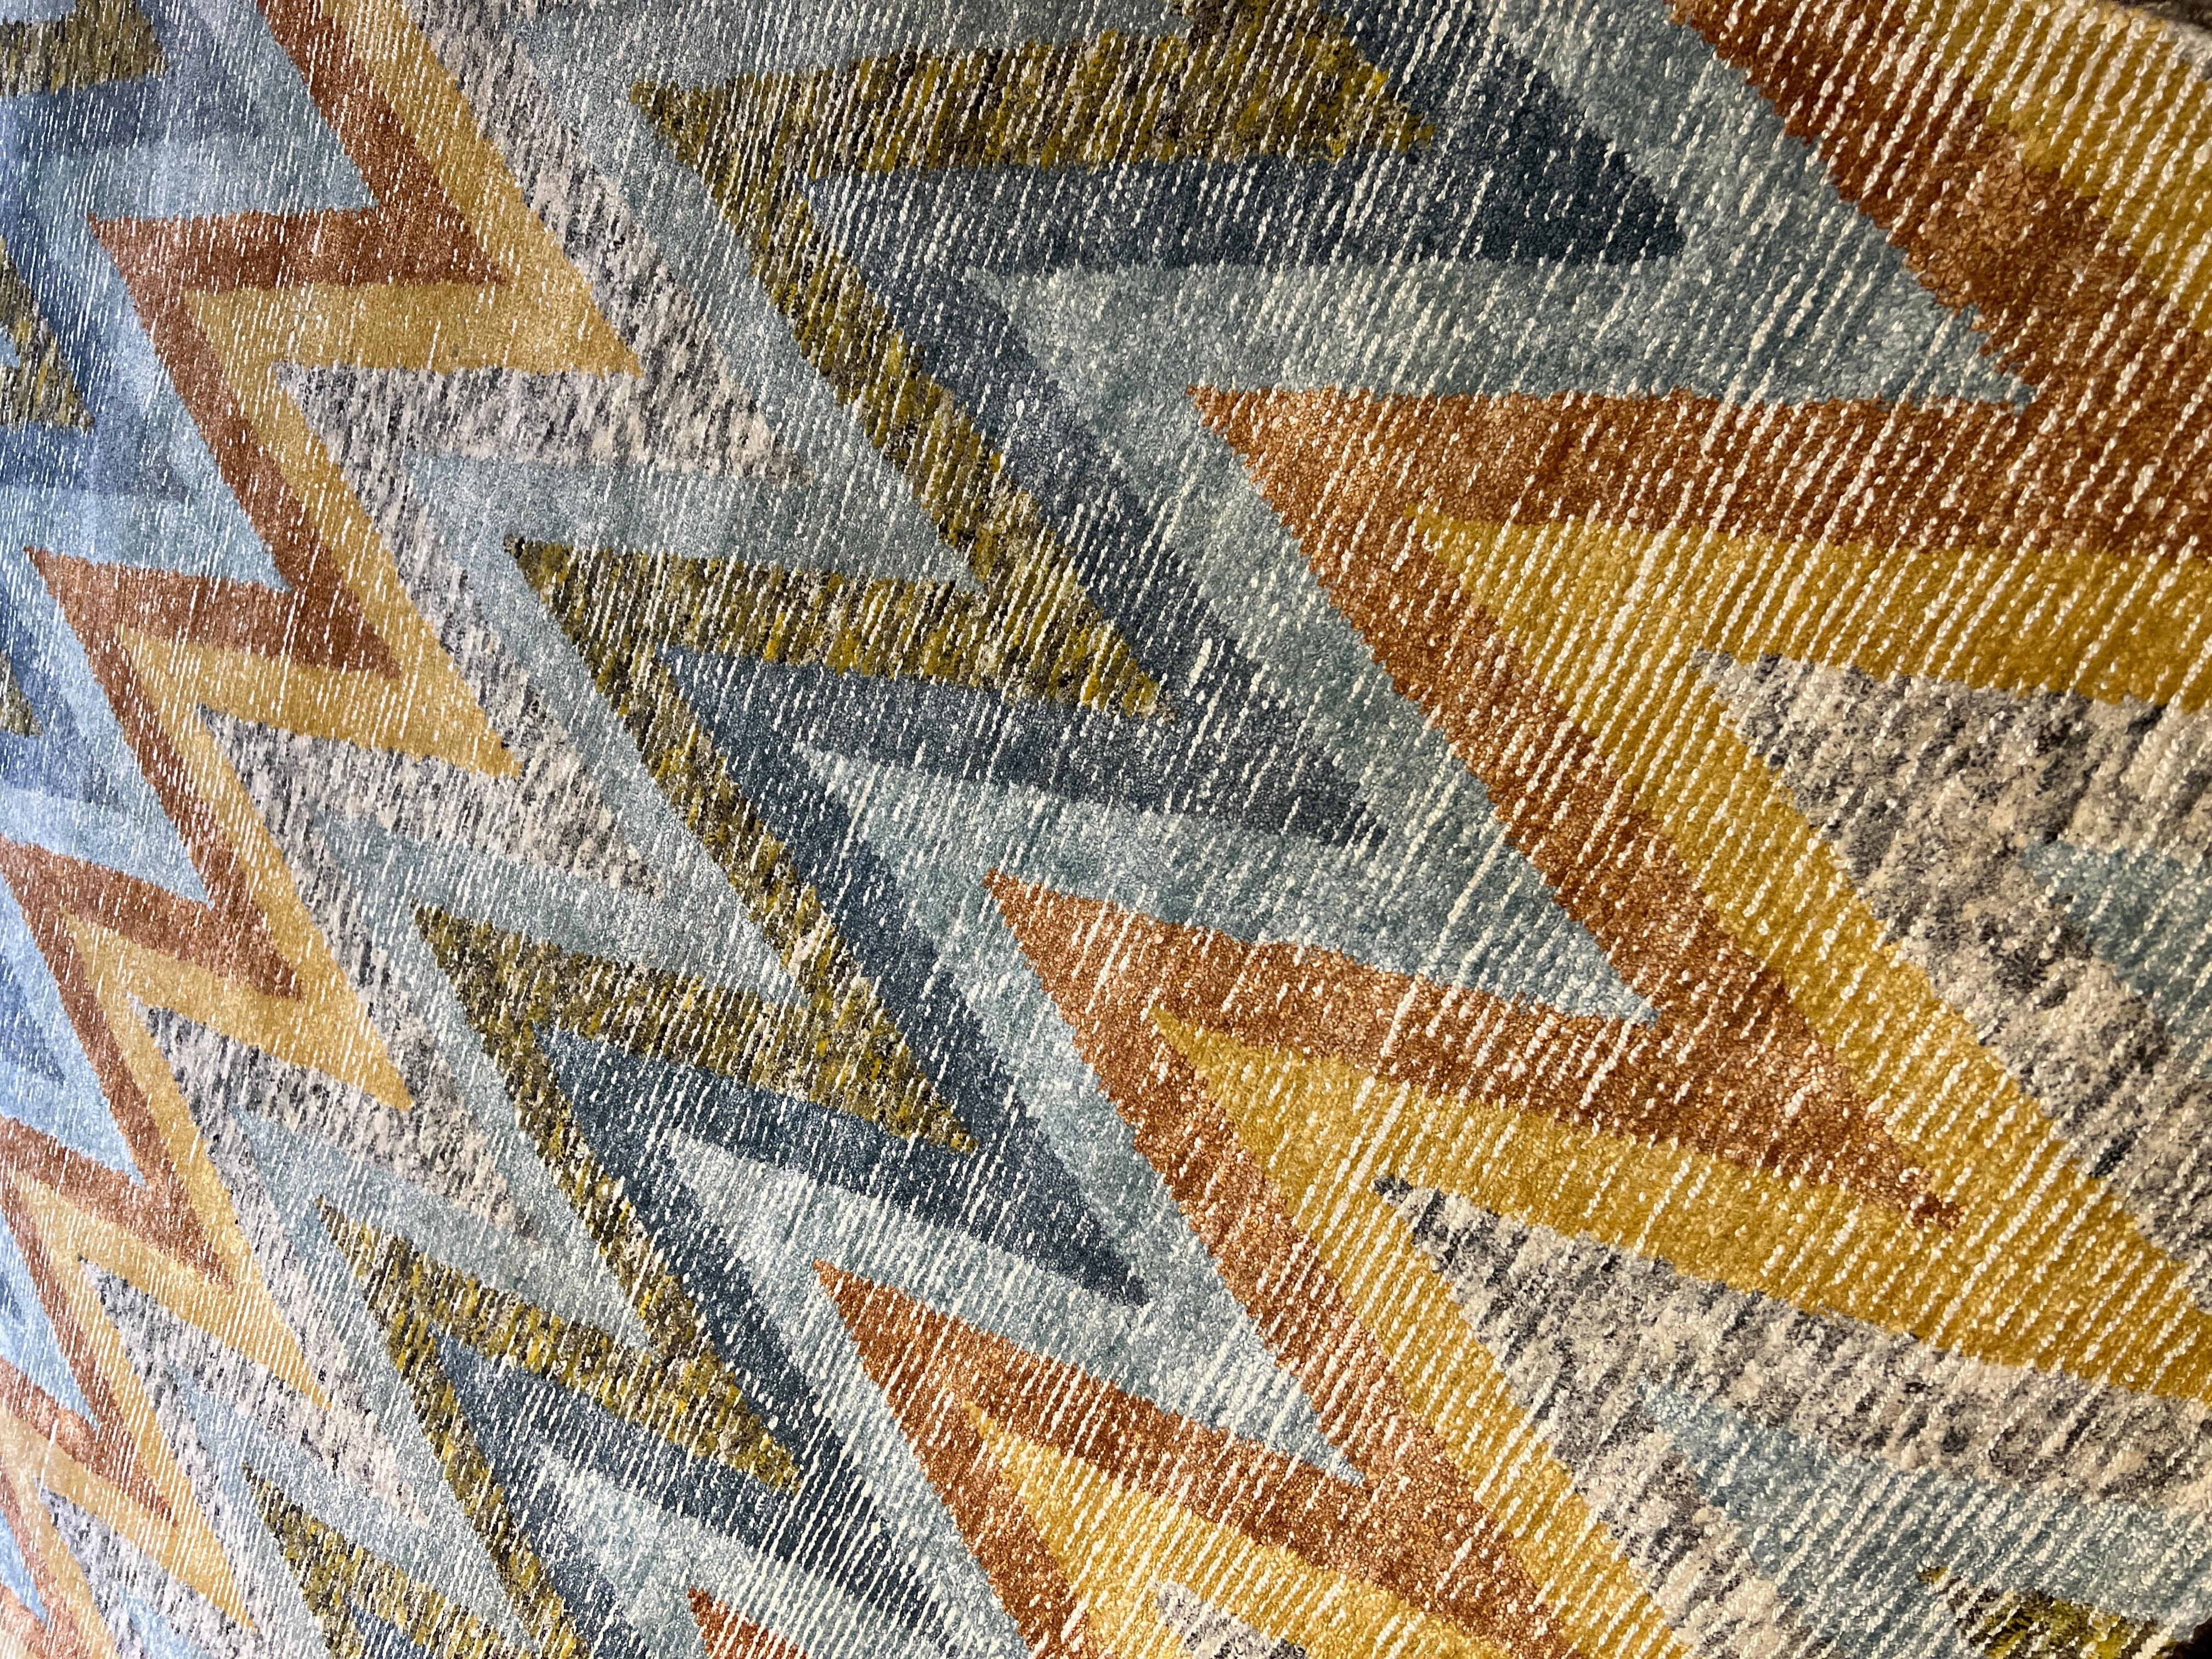 Vivez la magie de l'arc-en-ciel avec ce tapis en laine tufté à la main de 9 pi x 12 pi provenant de l'Inde. Le motif chevron vibrant ajoutera une touche de couleur et de texture à n'importe quelle pièce, tandis que la matière entièrement en laine